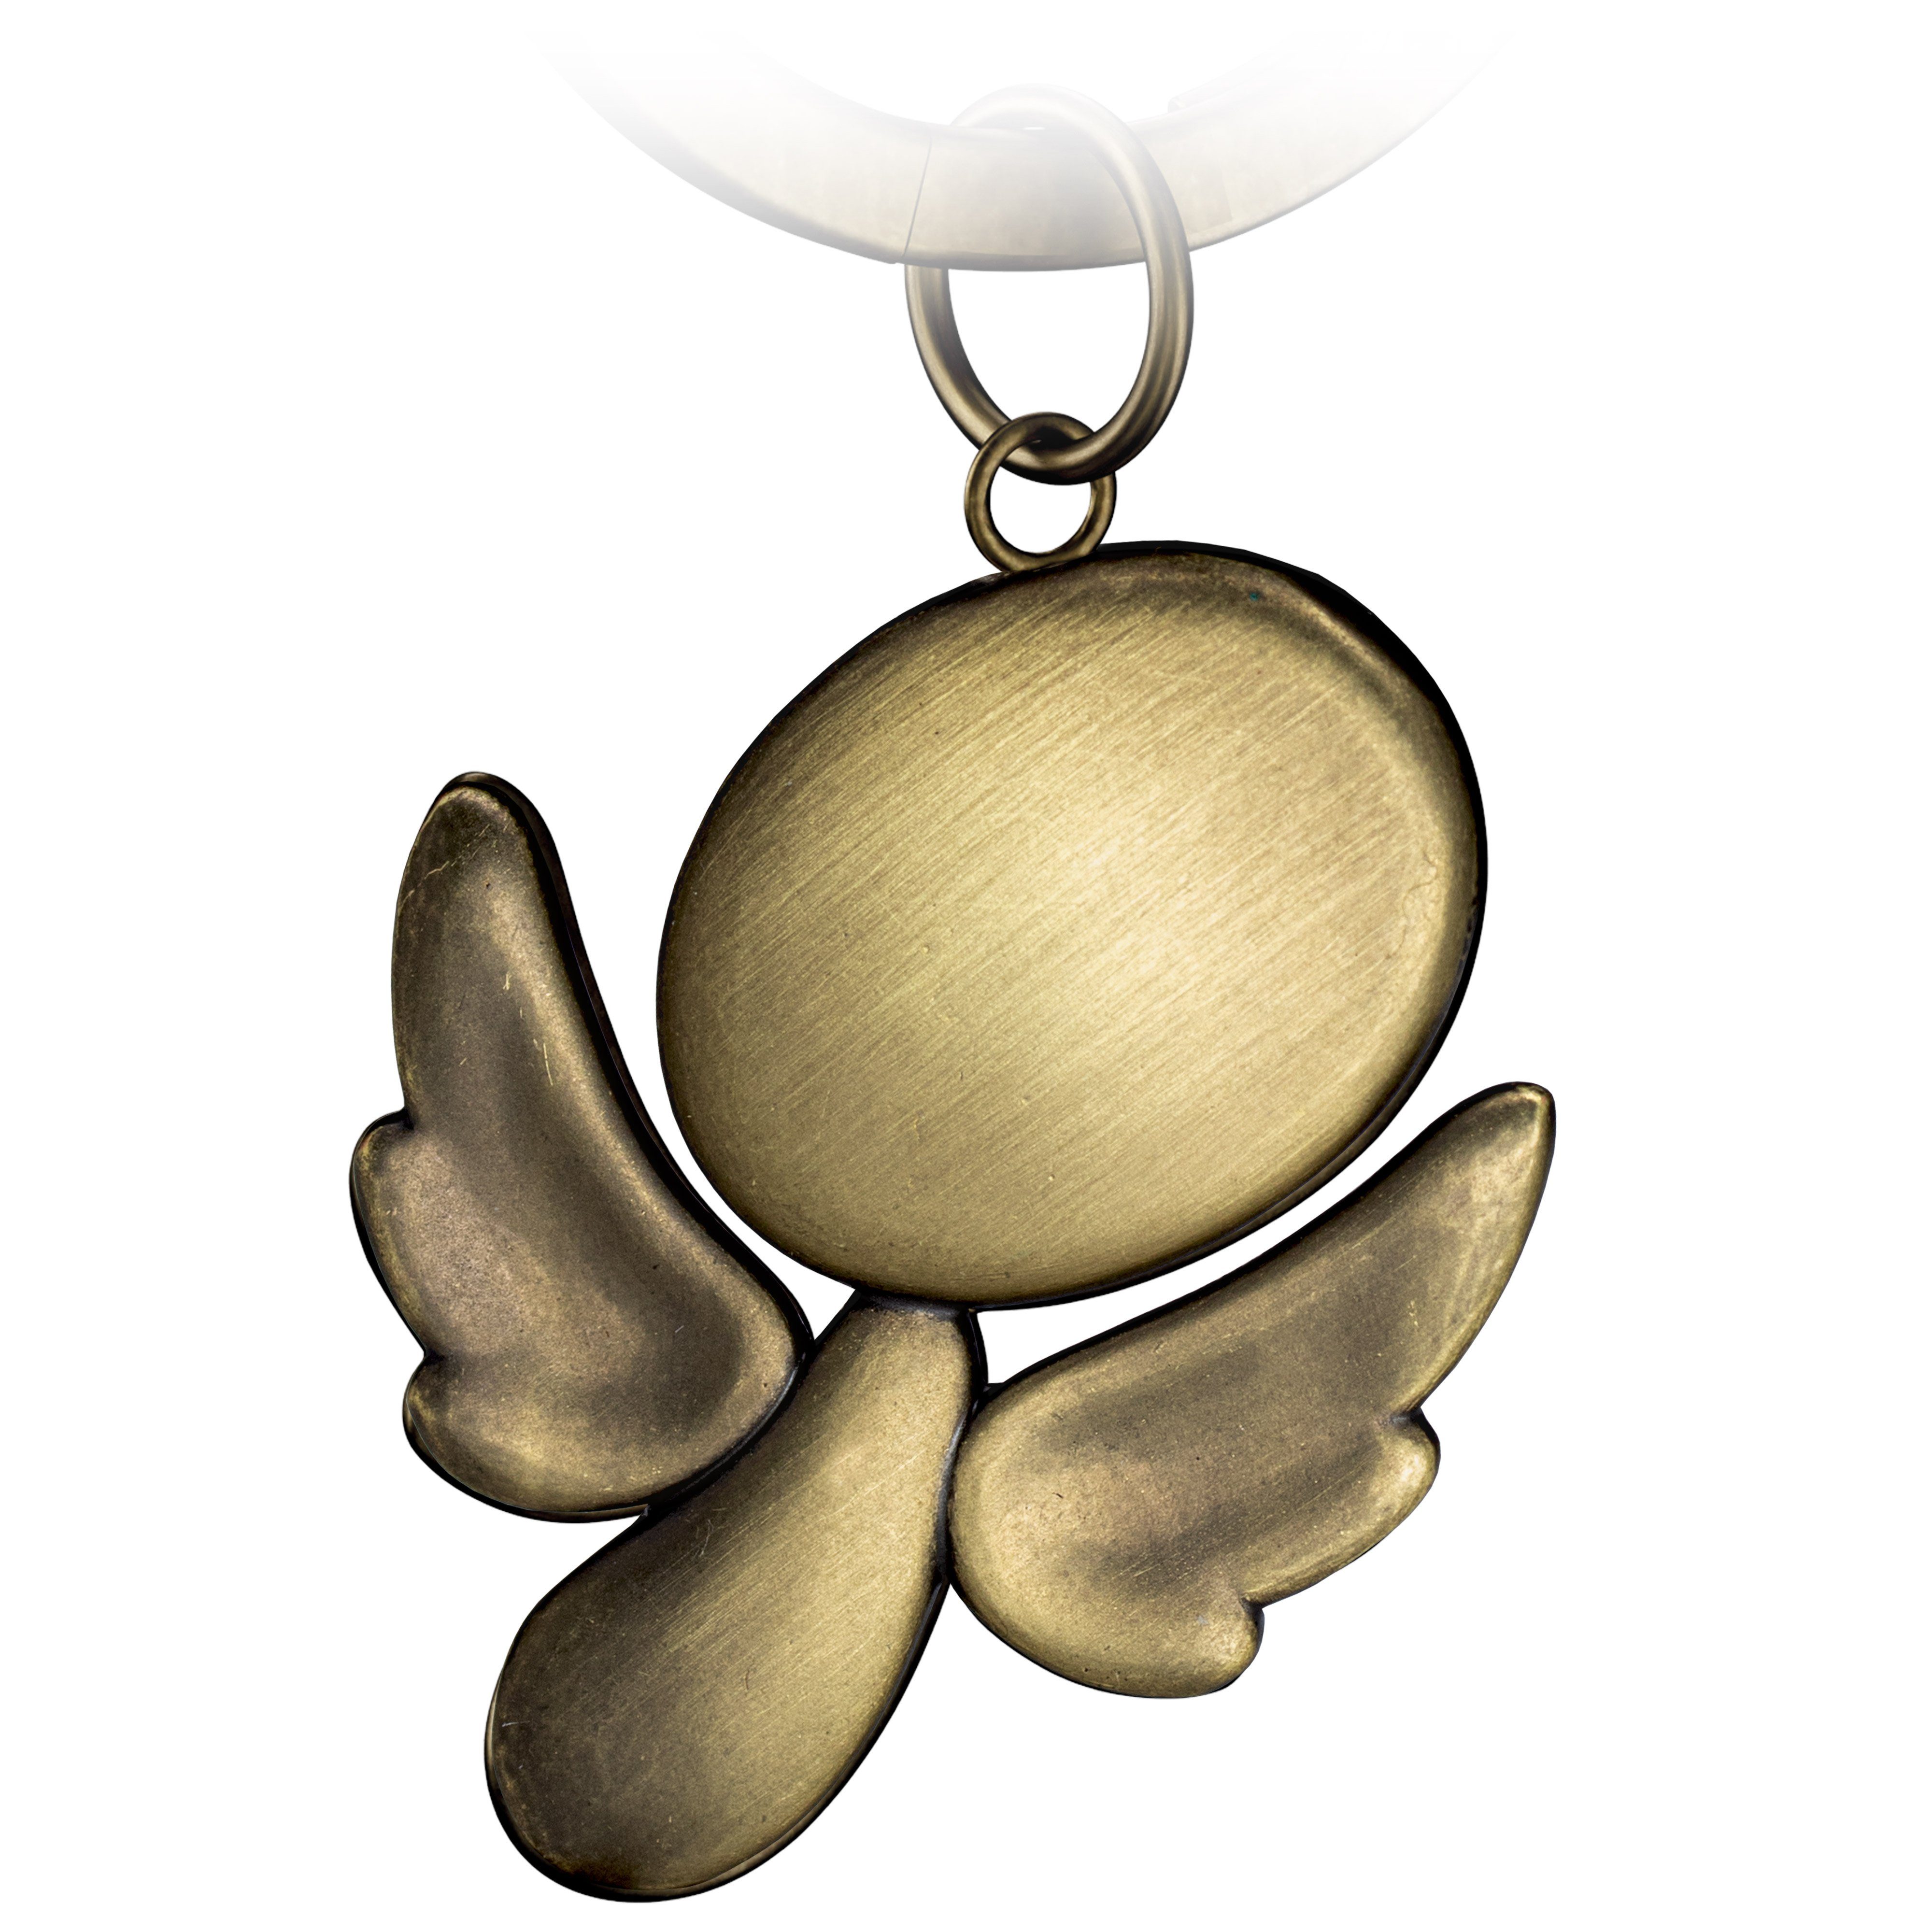 FABACH Schlüsselanhänger Schutzengel Furfur - Engel Anhänger Metall - Glücksbringer Geschenk Antique Bronze | Schlüsselanhänger